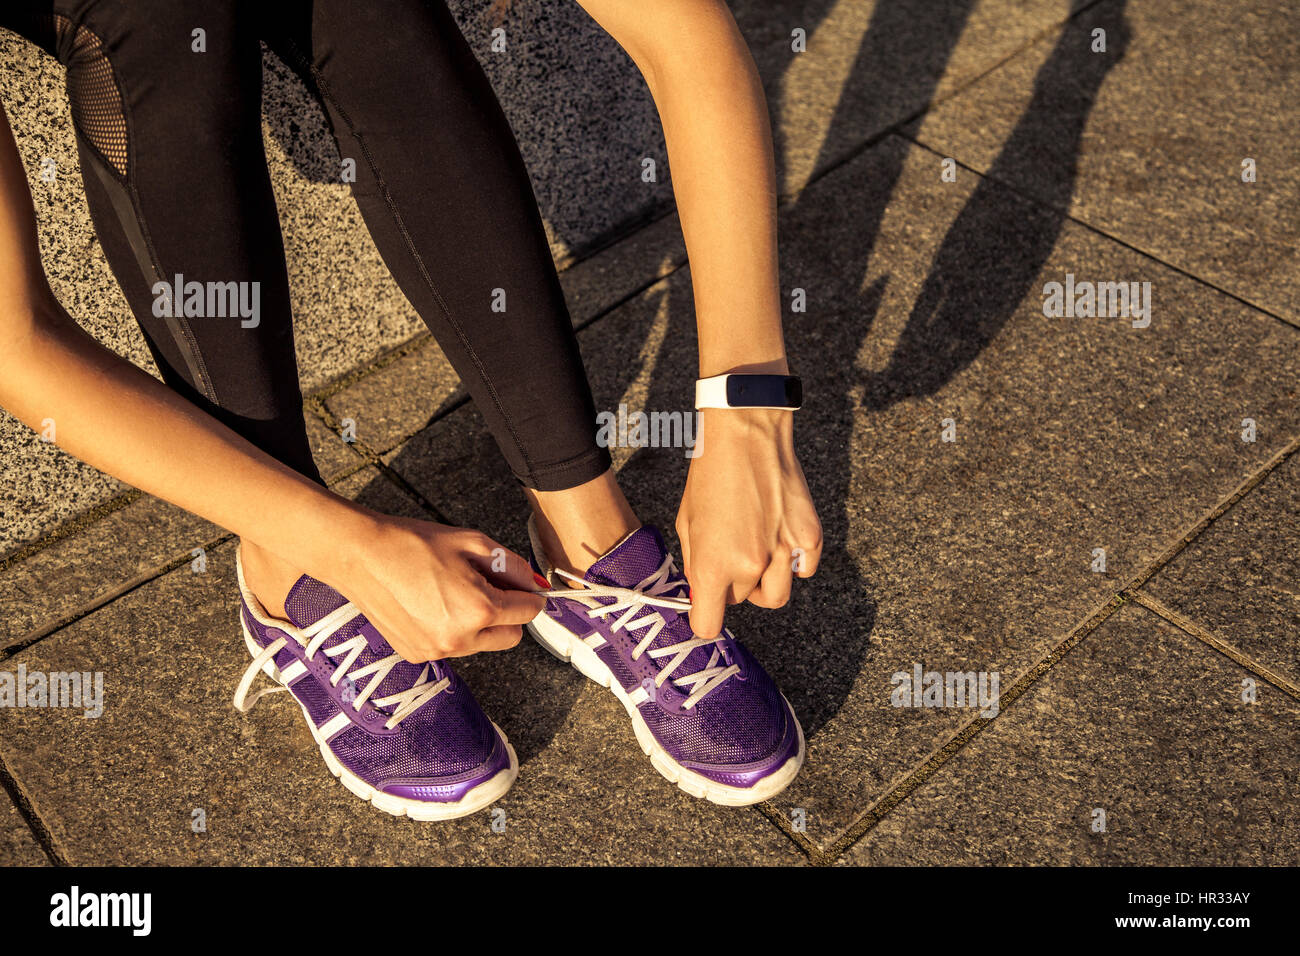 Laufschuhe. Barfuß Laufschuhe Nahaufnahme. Sportlerin, die Schnürsenkel zum  Joggen unterwegs in minimalistischen barfuß Laufschuhe binden. Läufer, die  immer Stockfotografie - Alamy